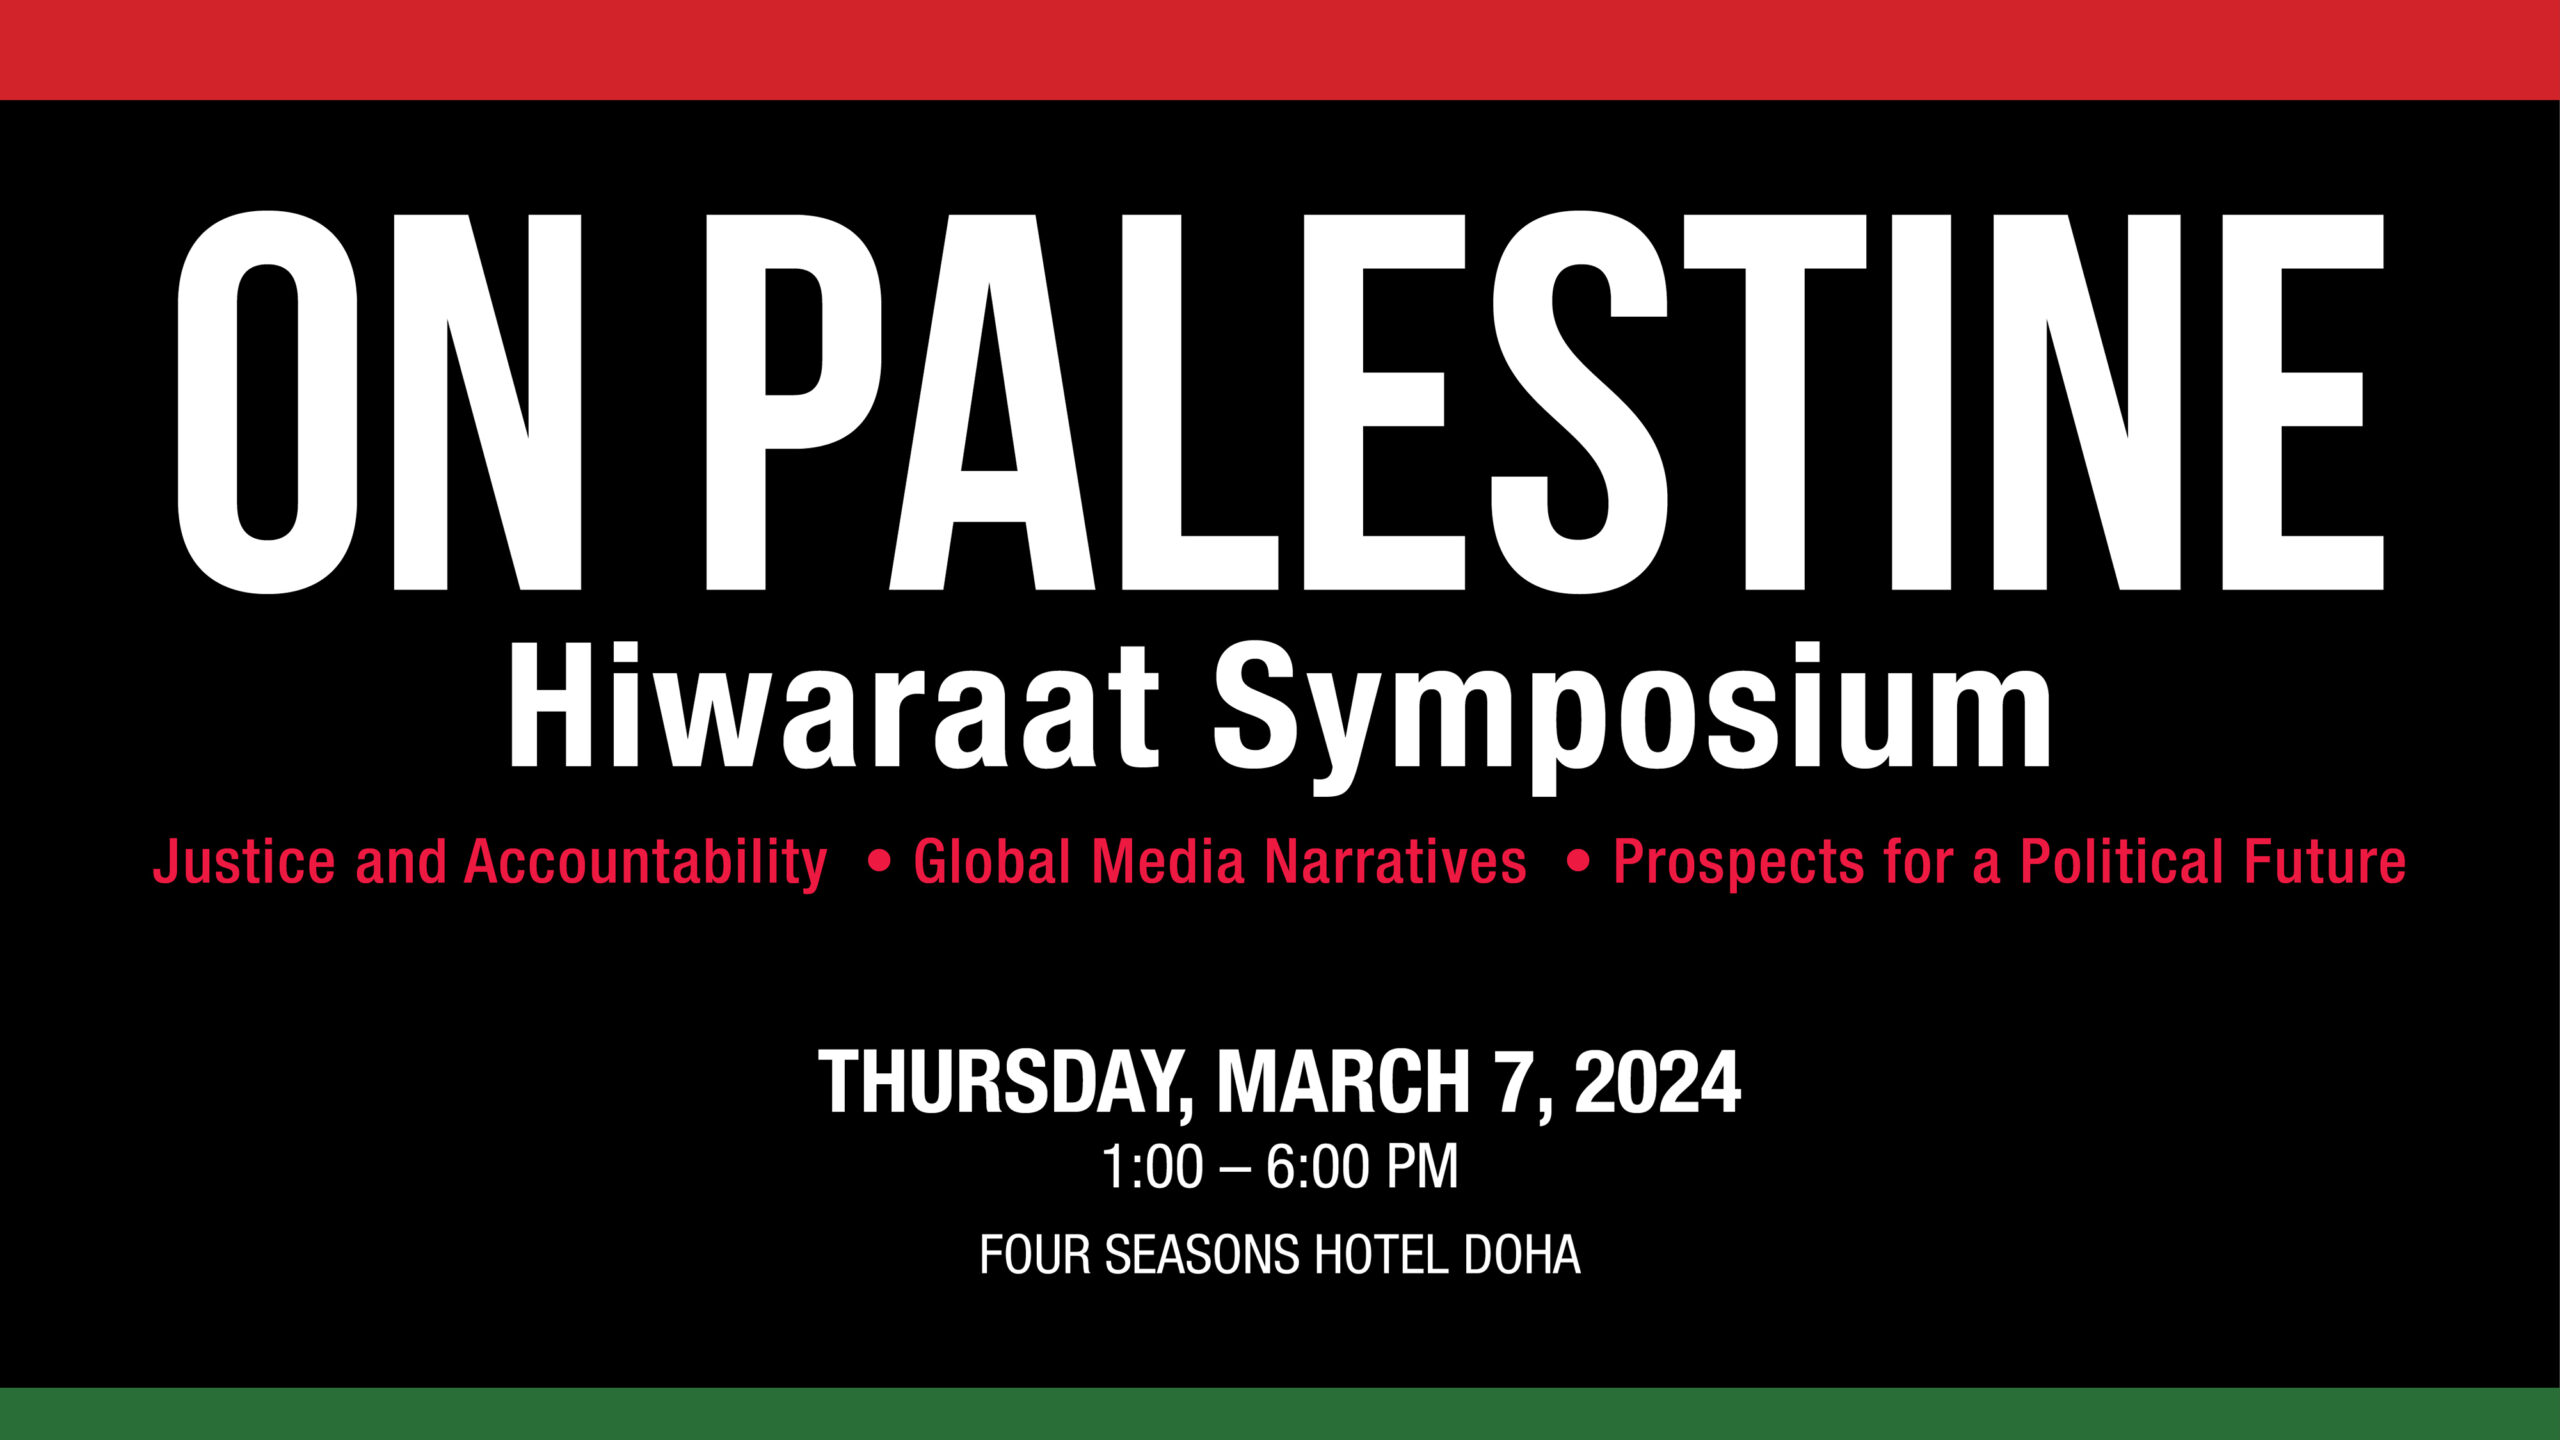 On Palestine: Hiwaraat Symposium